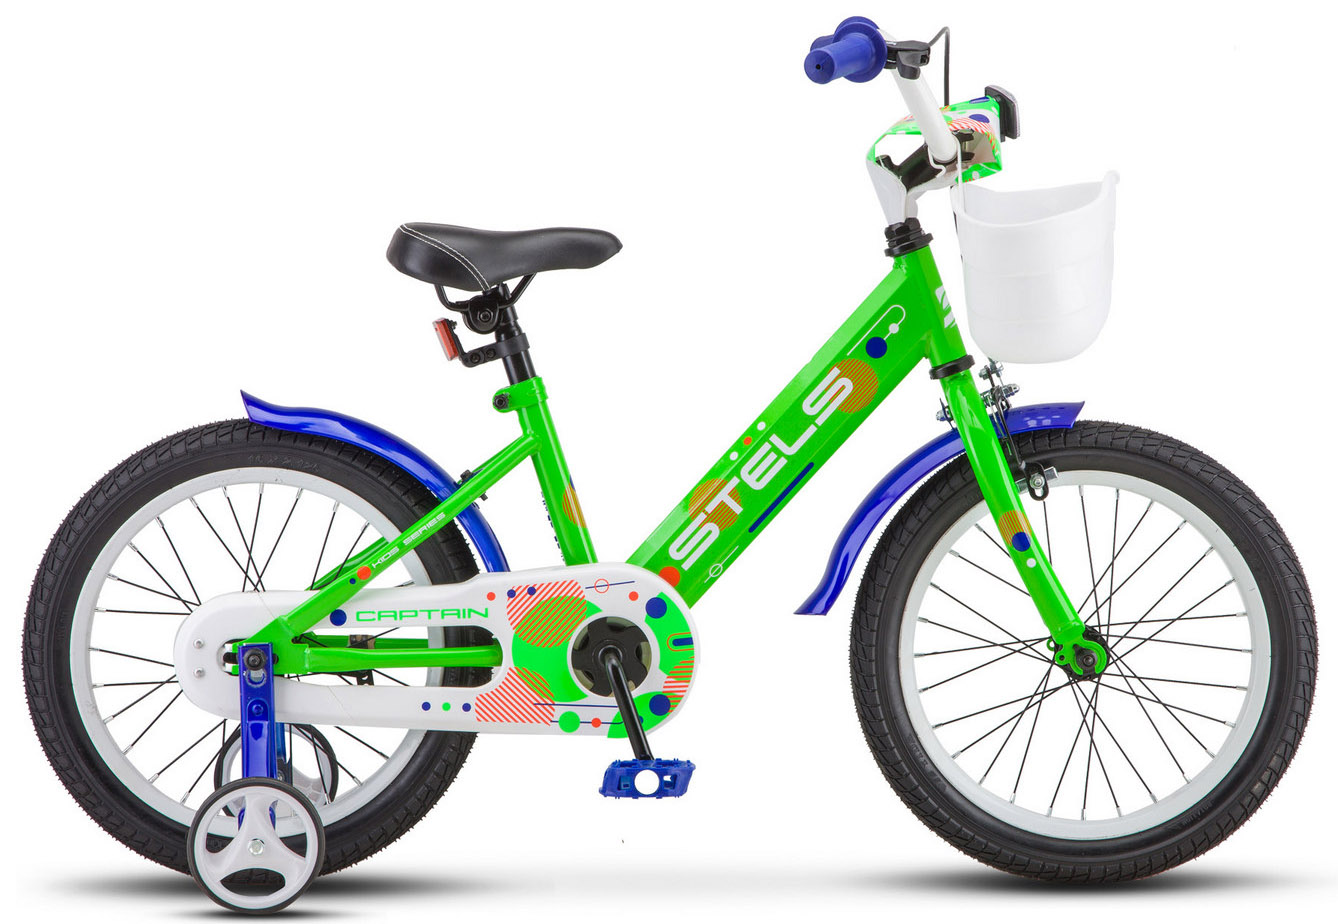  Отзывы о Детском велосипеде Stels Captain 16 V010 2020